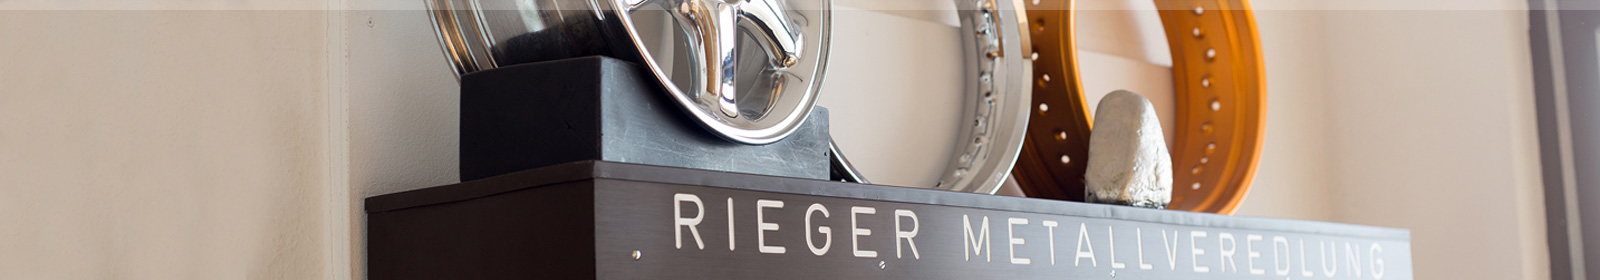 Rieger Metallveredlung – Legal notice